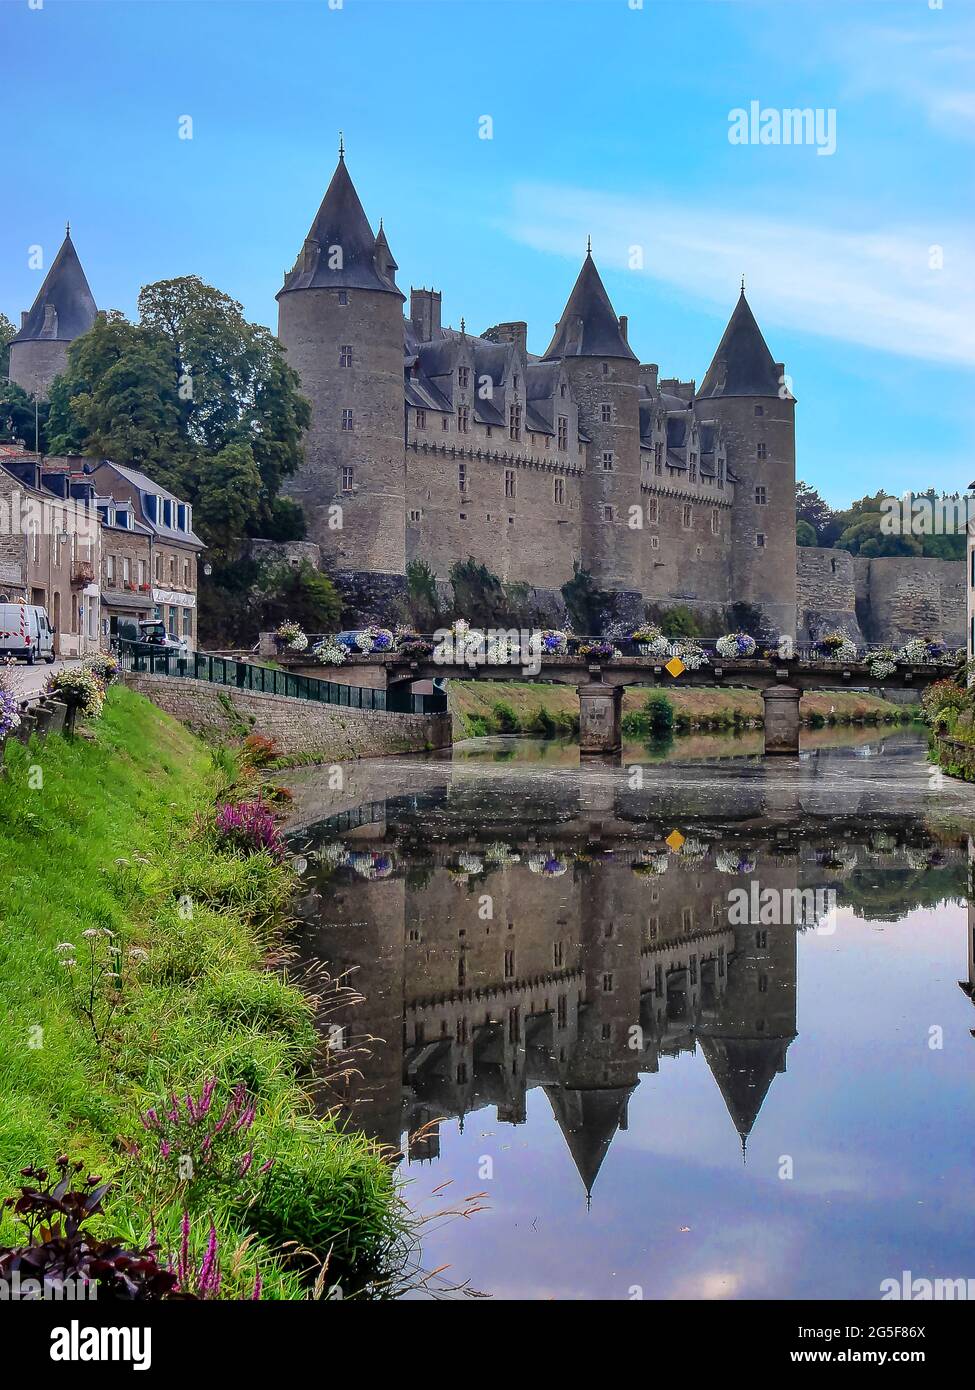 El castillo de Josselin es un castillo francés de origenes medieval que se encuentra ubicado en la ciudad de Josselin Stockfoto